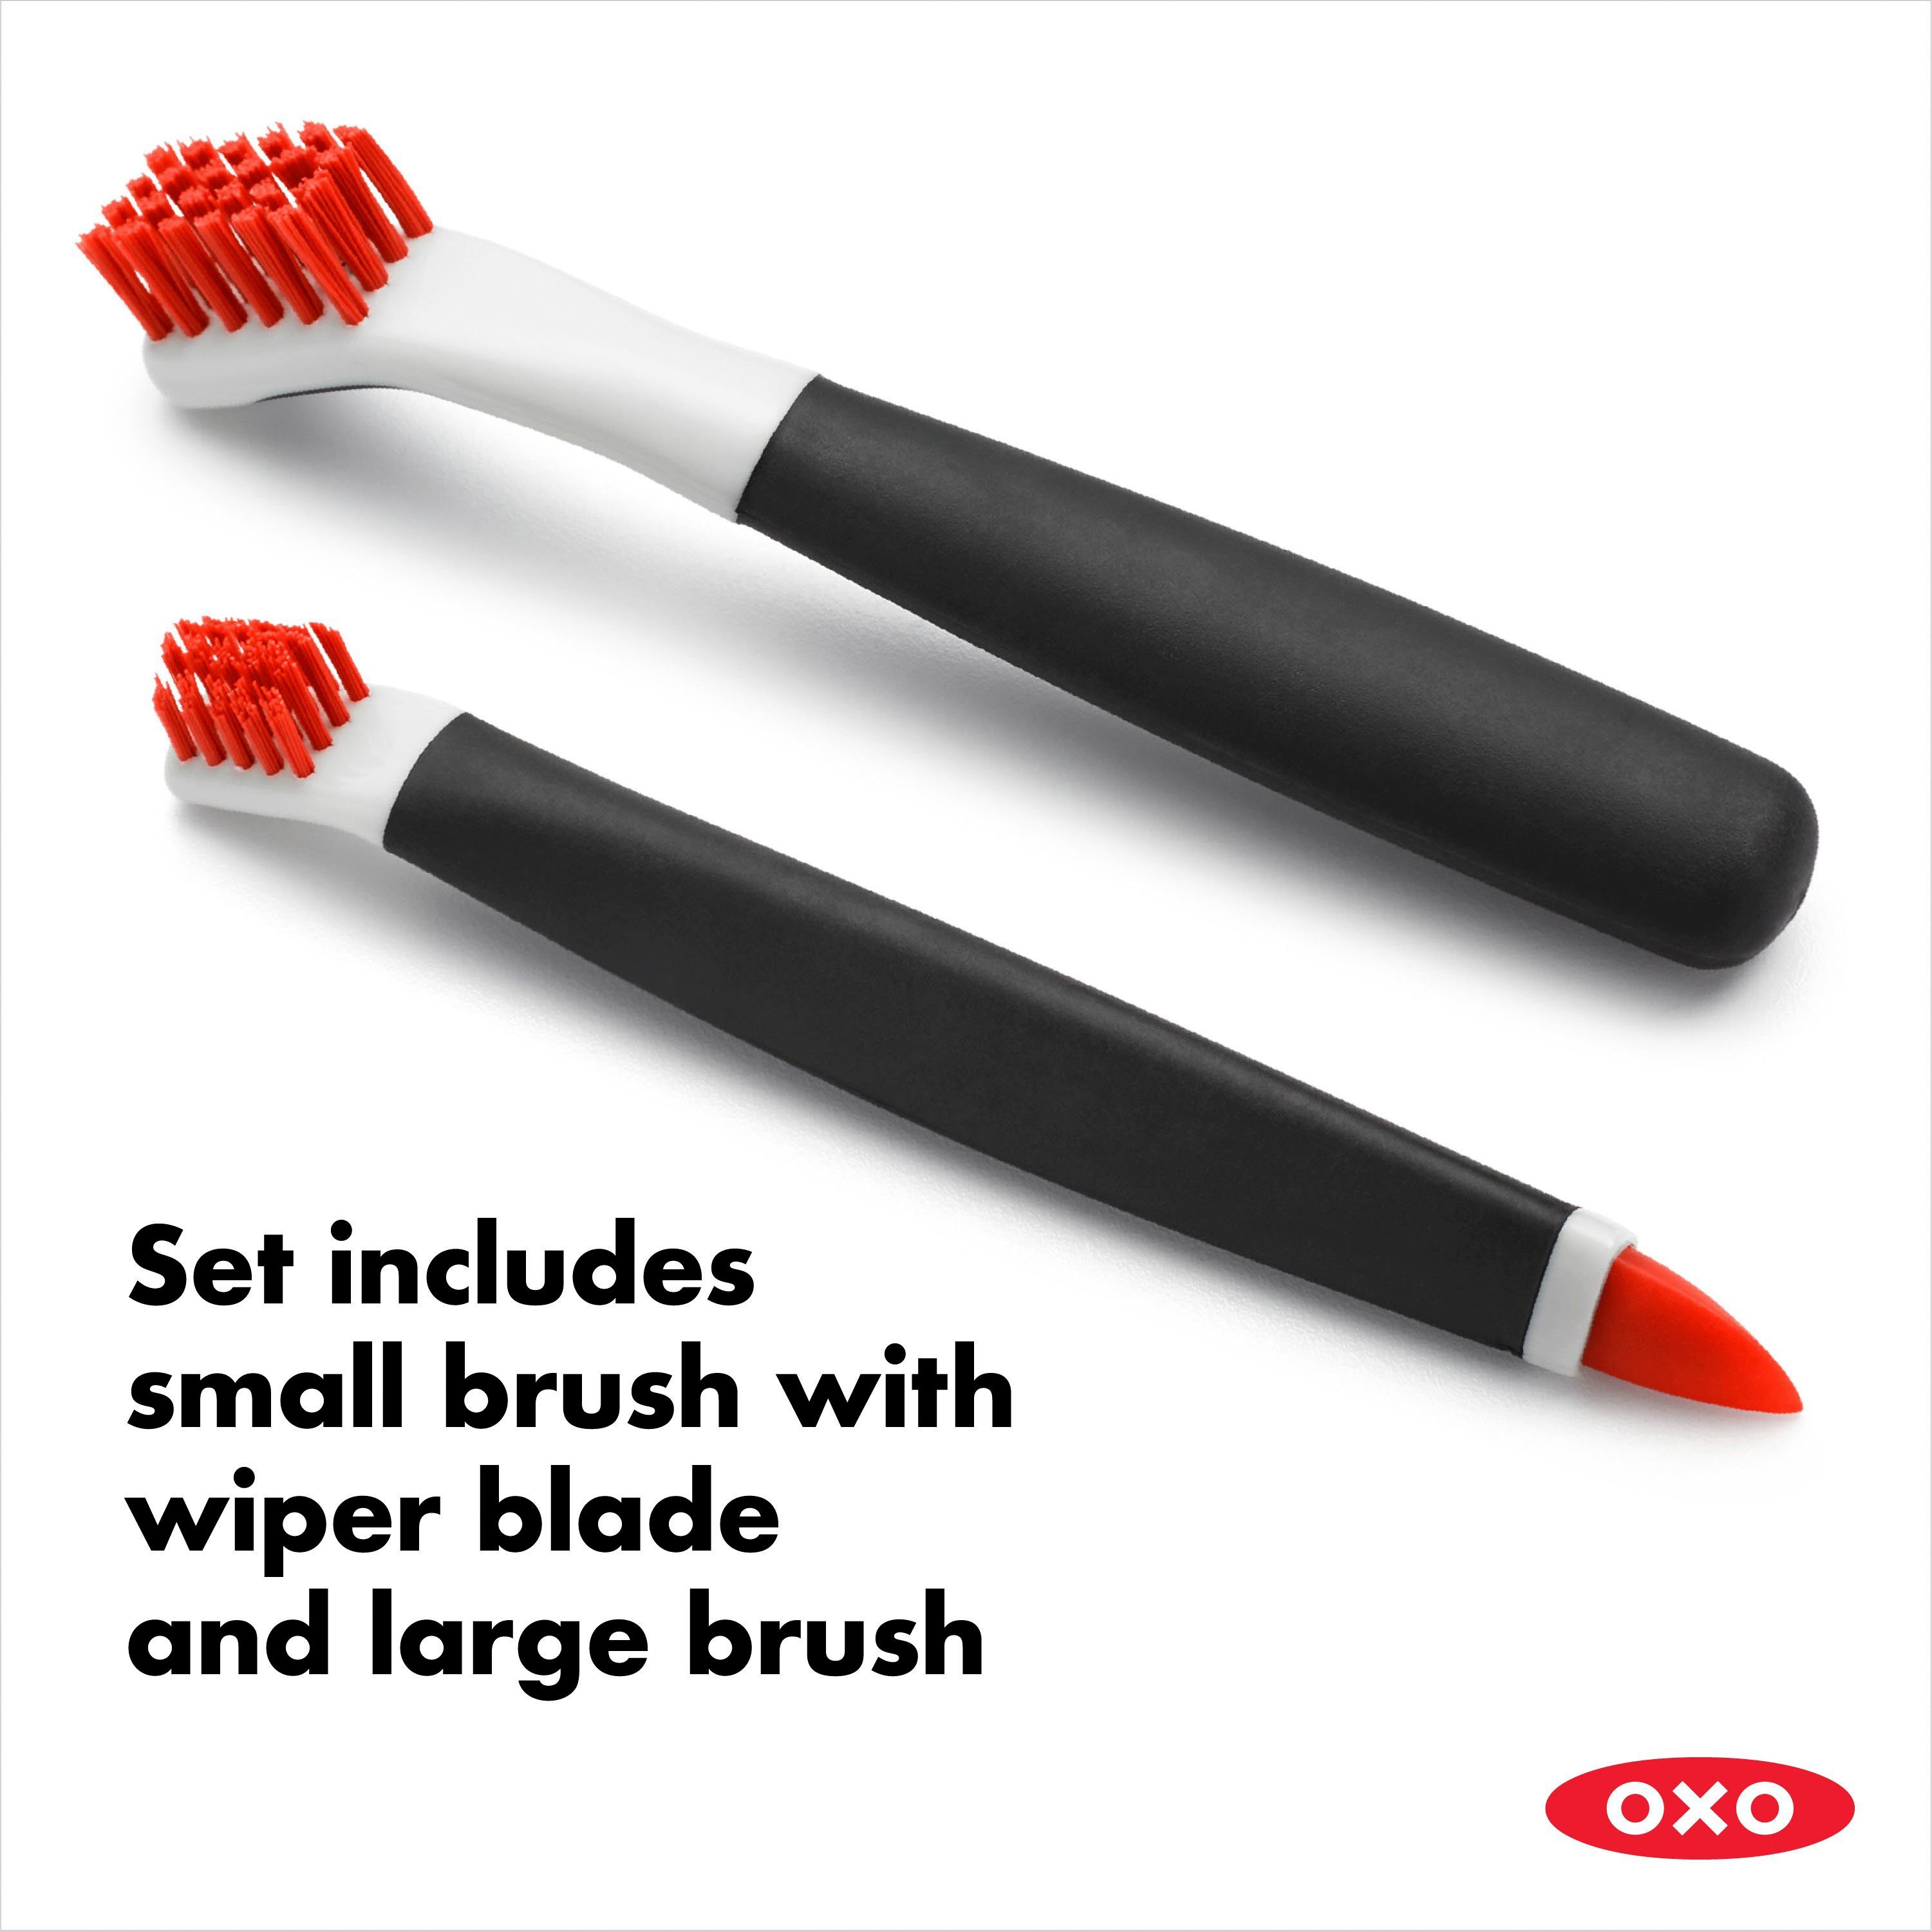 Good zur Bürsten-Putzset Grips Tiefenreinigung OXO OXO Good Reinigungsbürsten-Set Tiefenreinigung – zur orange, Grips